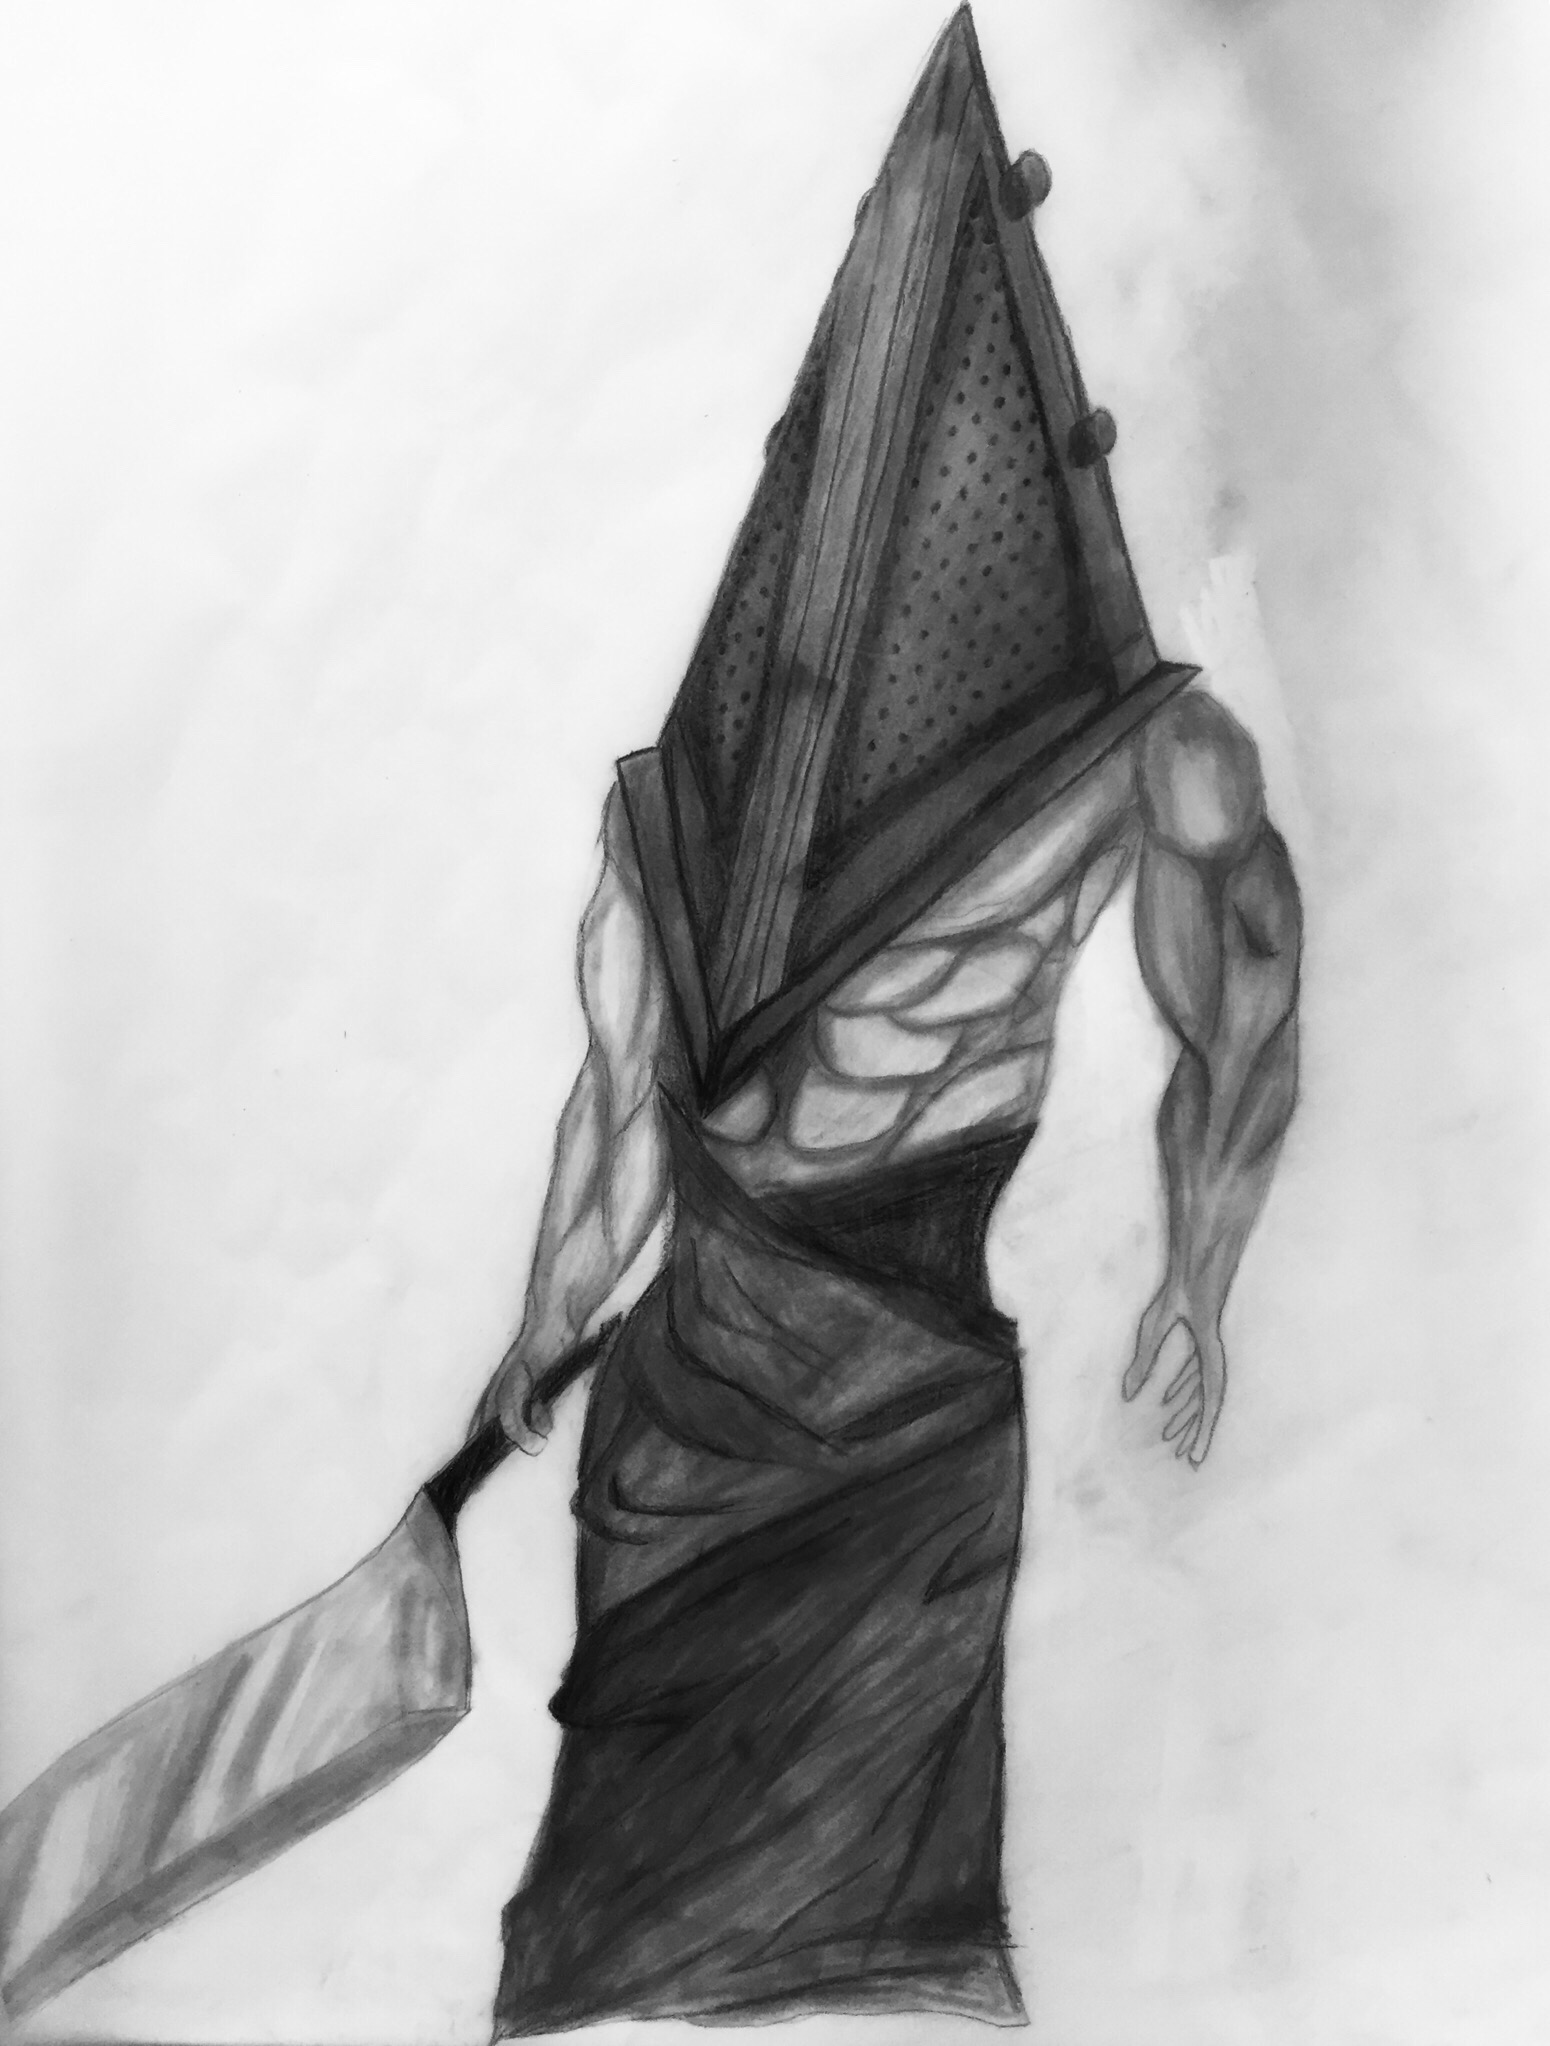 Pyramid Head - Sketch fanart by IALMAR-art on DeviantArt